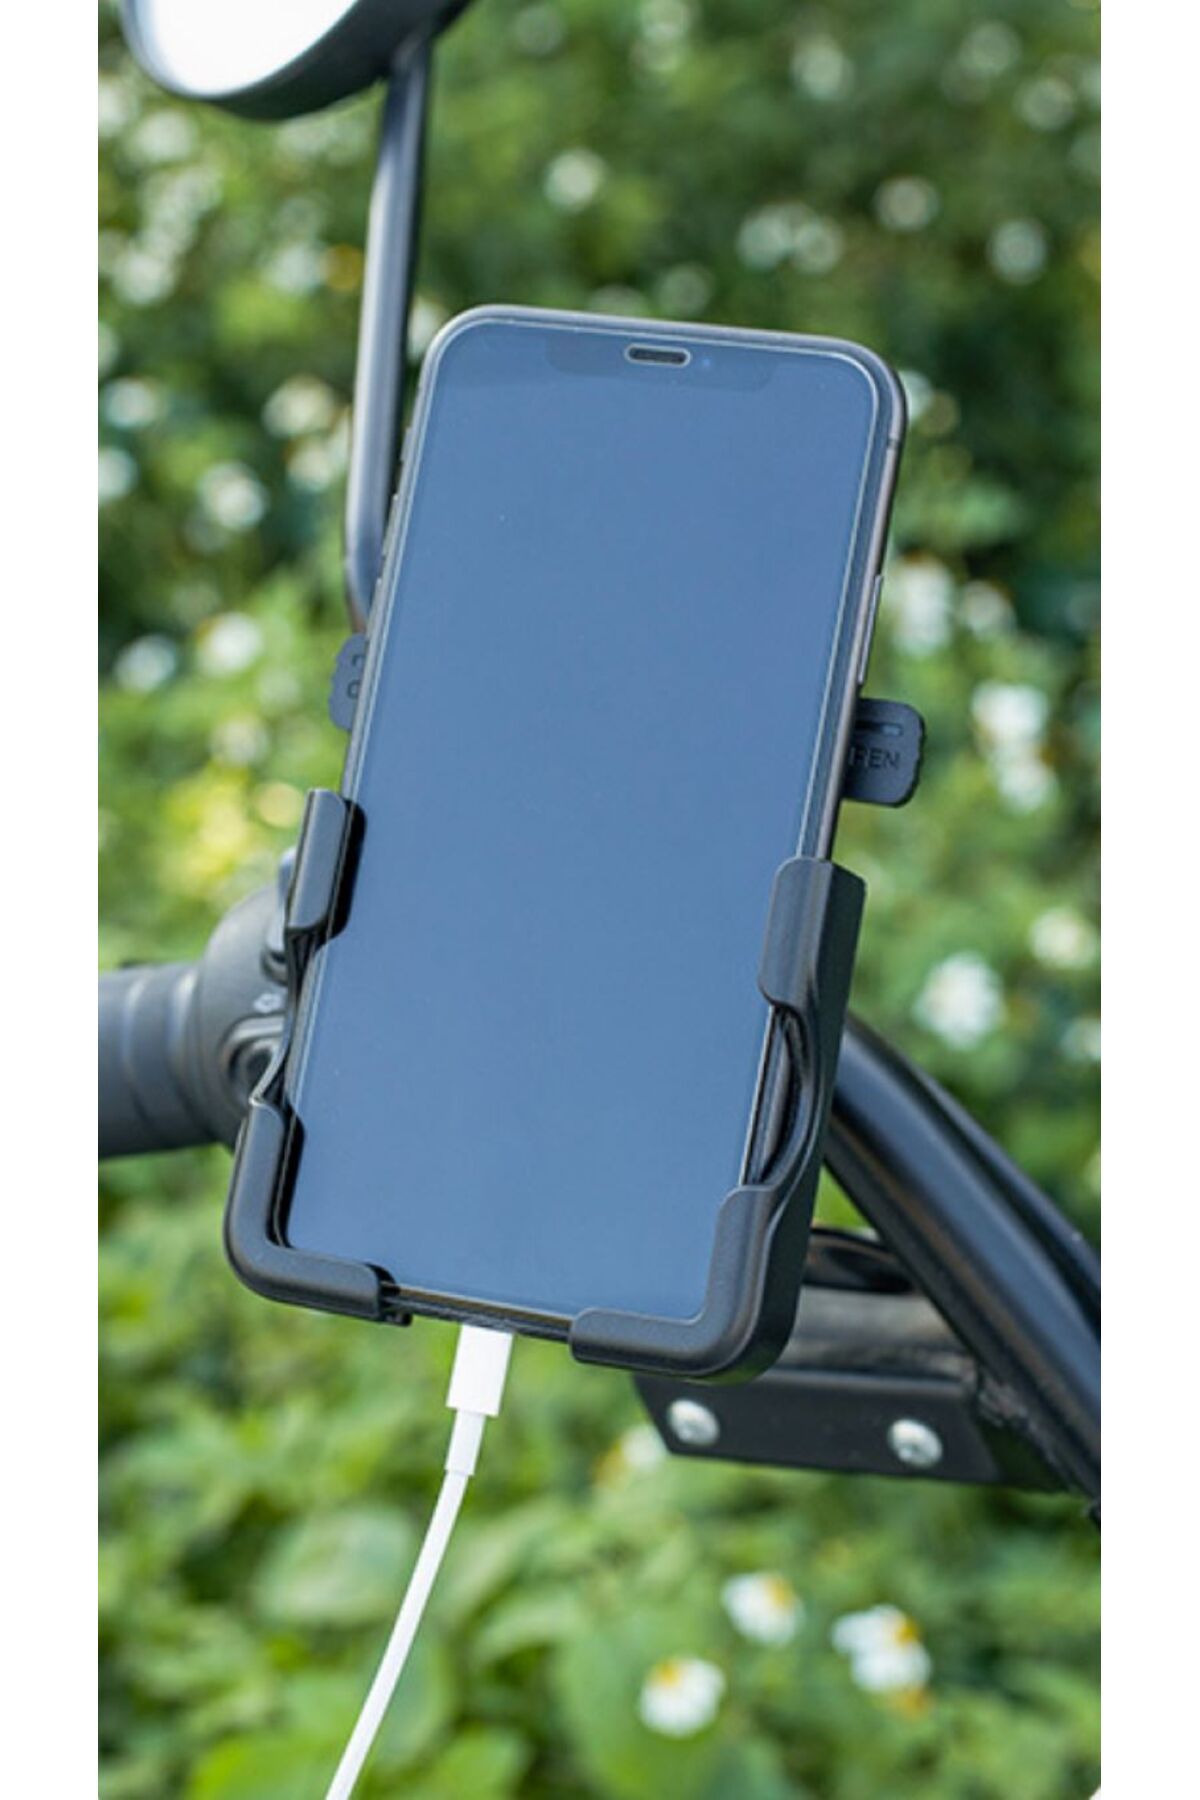 asua Bisiklet Motorsiklet Scooter ATV Otomatik Tuşlu Motosiklet Gidon Bağlantılı Telefon Tutucu Tutacağı